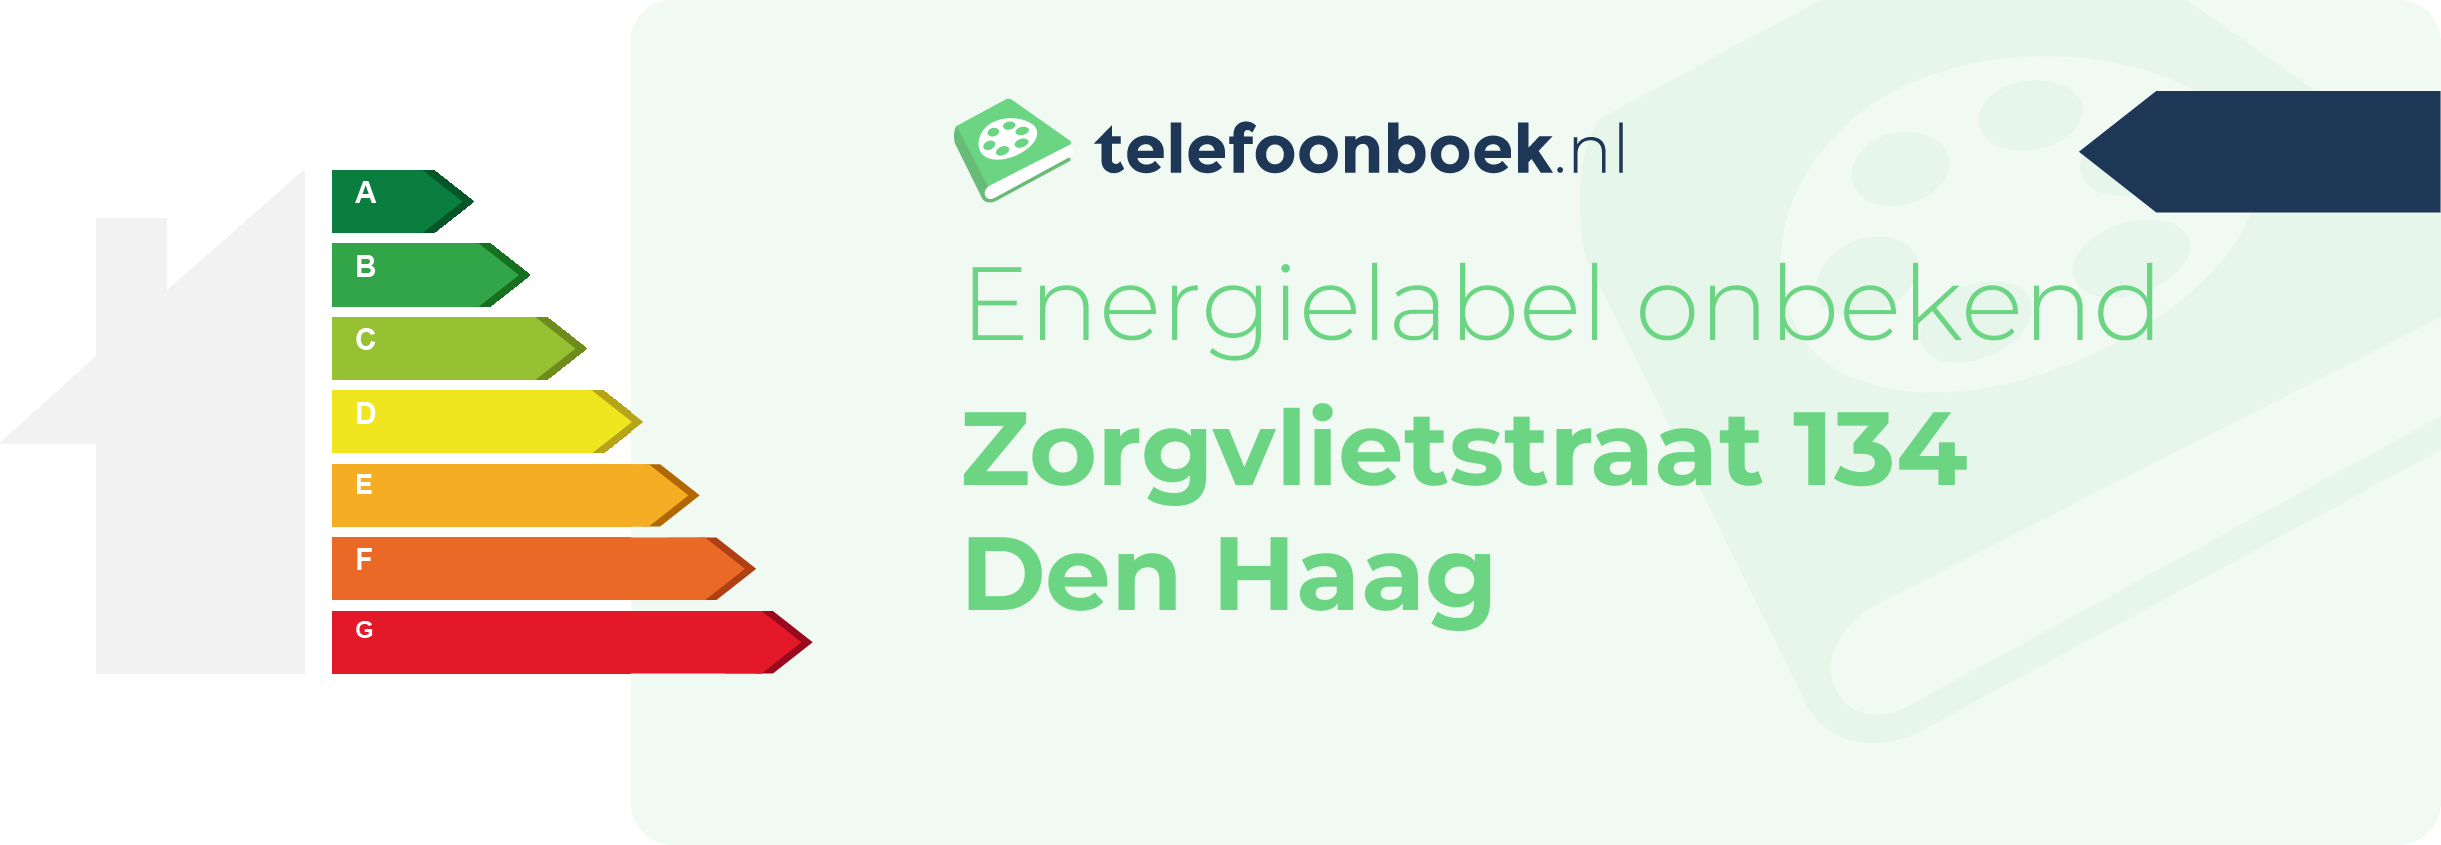 Energielabel Zorgvlietstraat 134 Den Haag